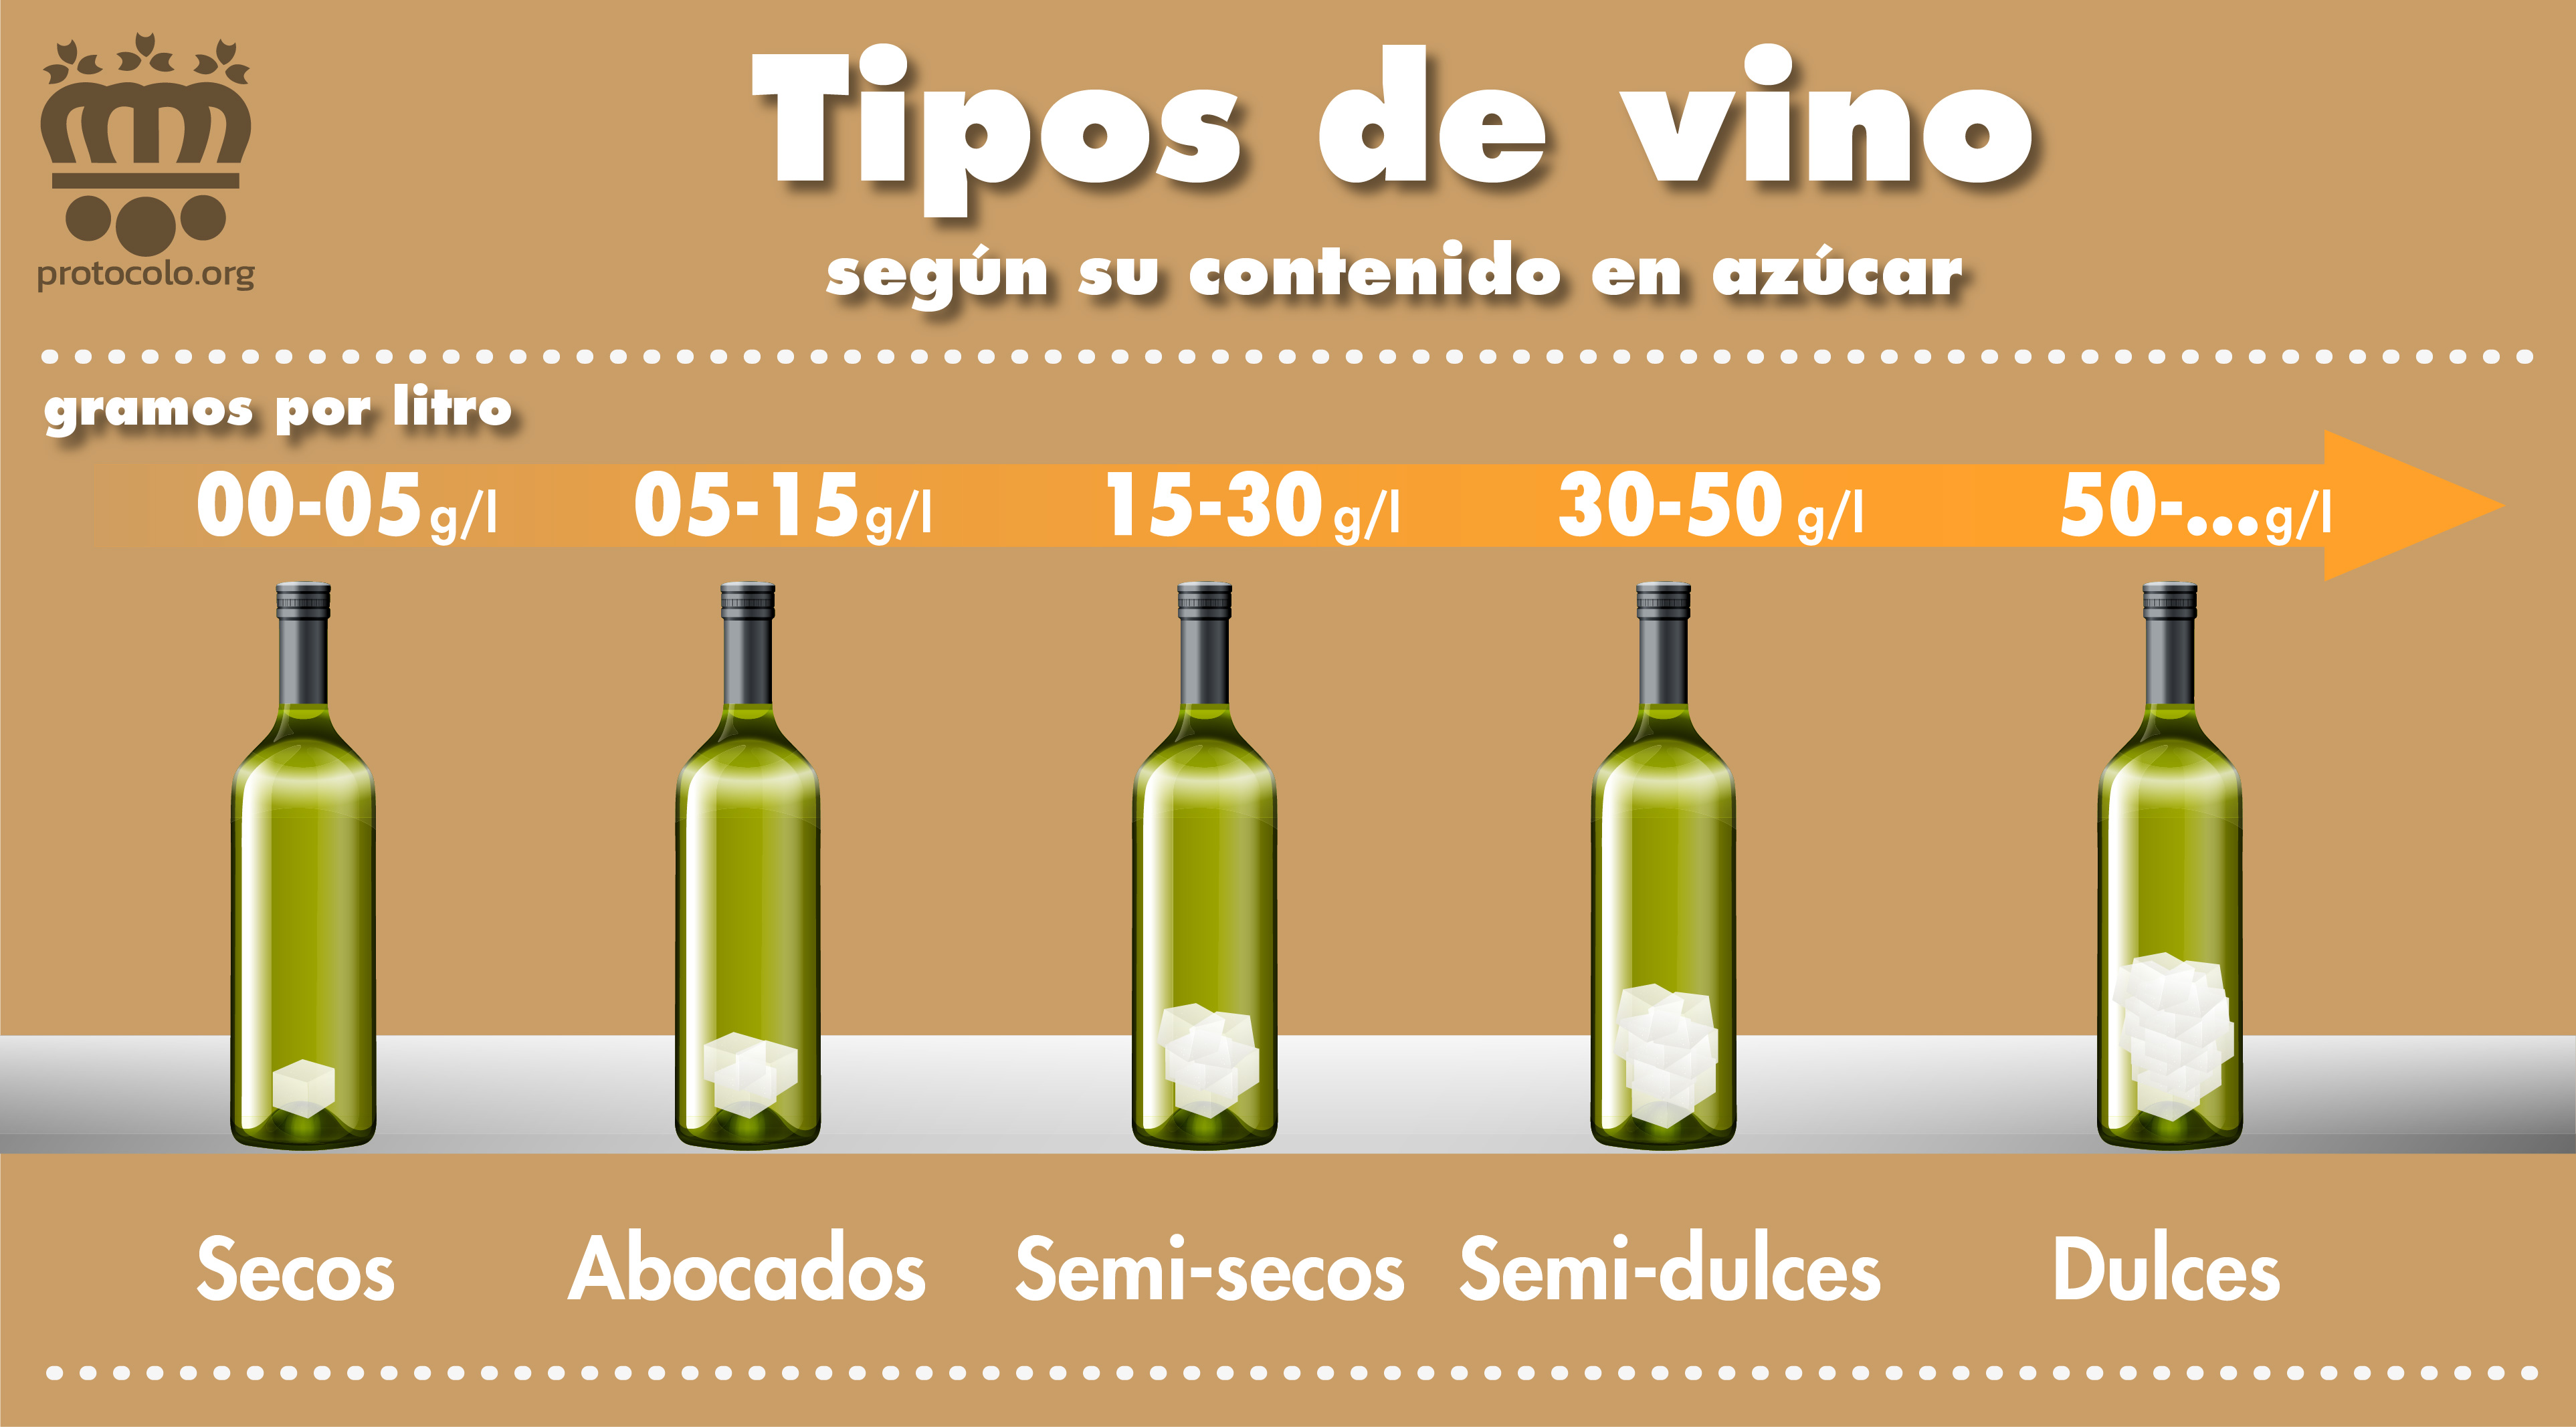 Clasificación de los vinos según su contenido en azúcar